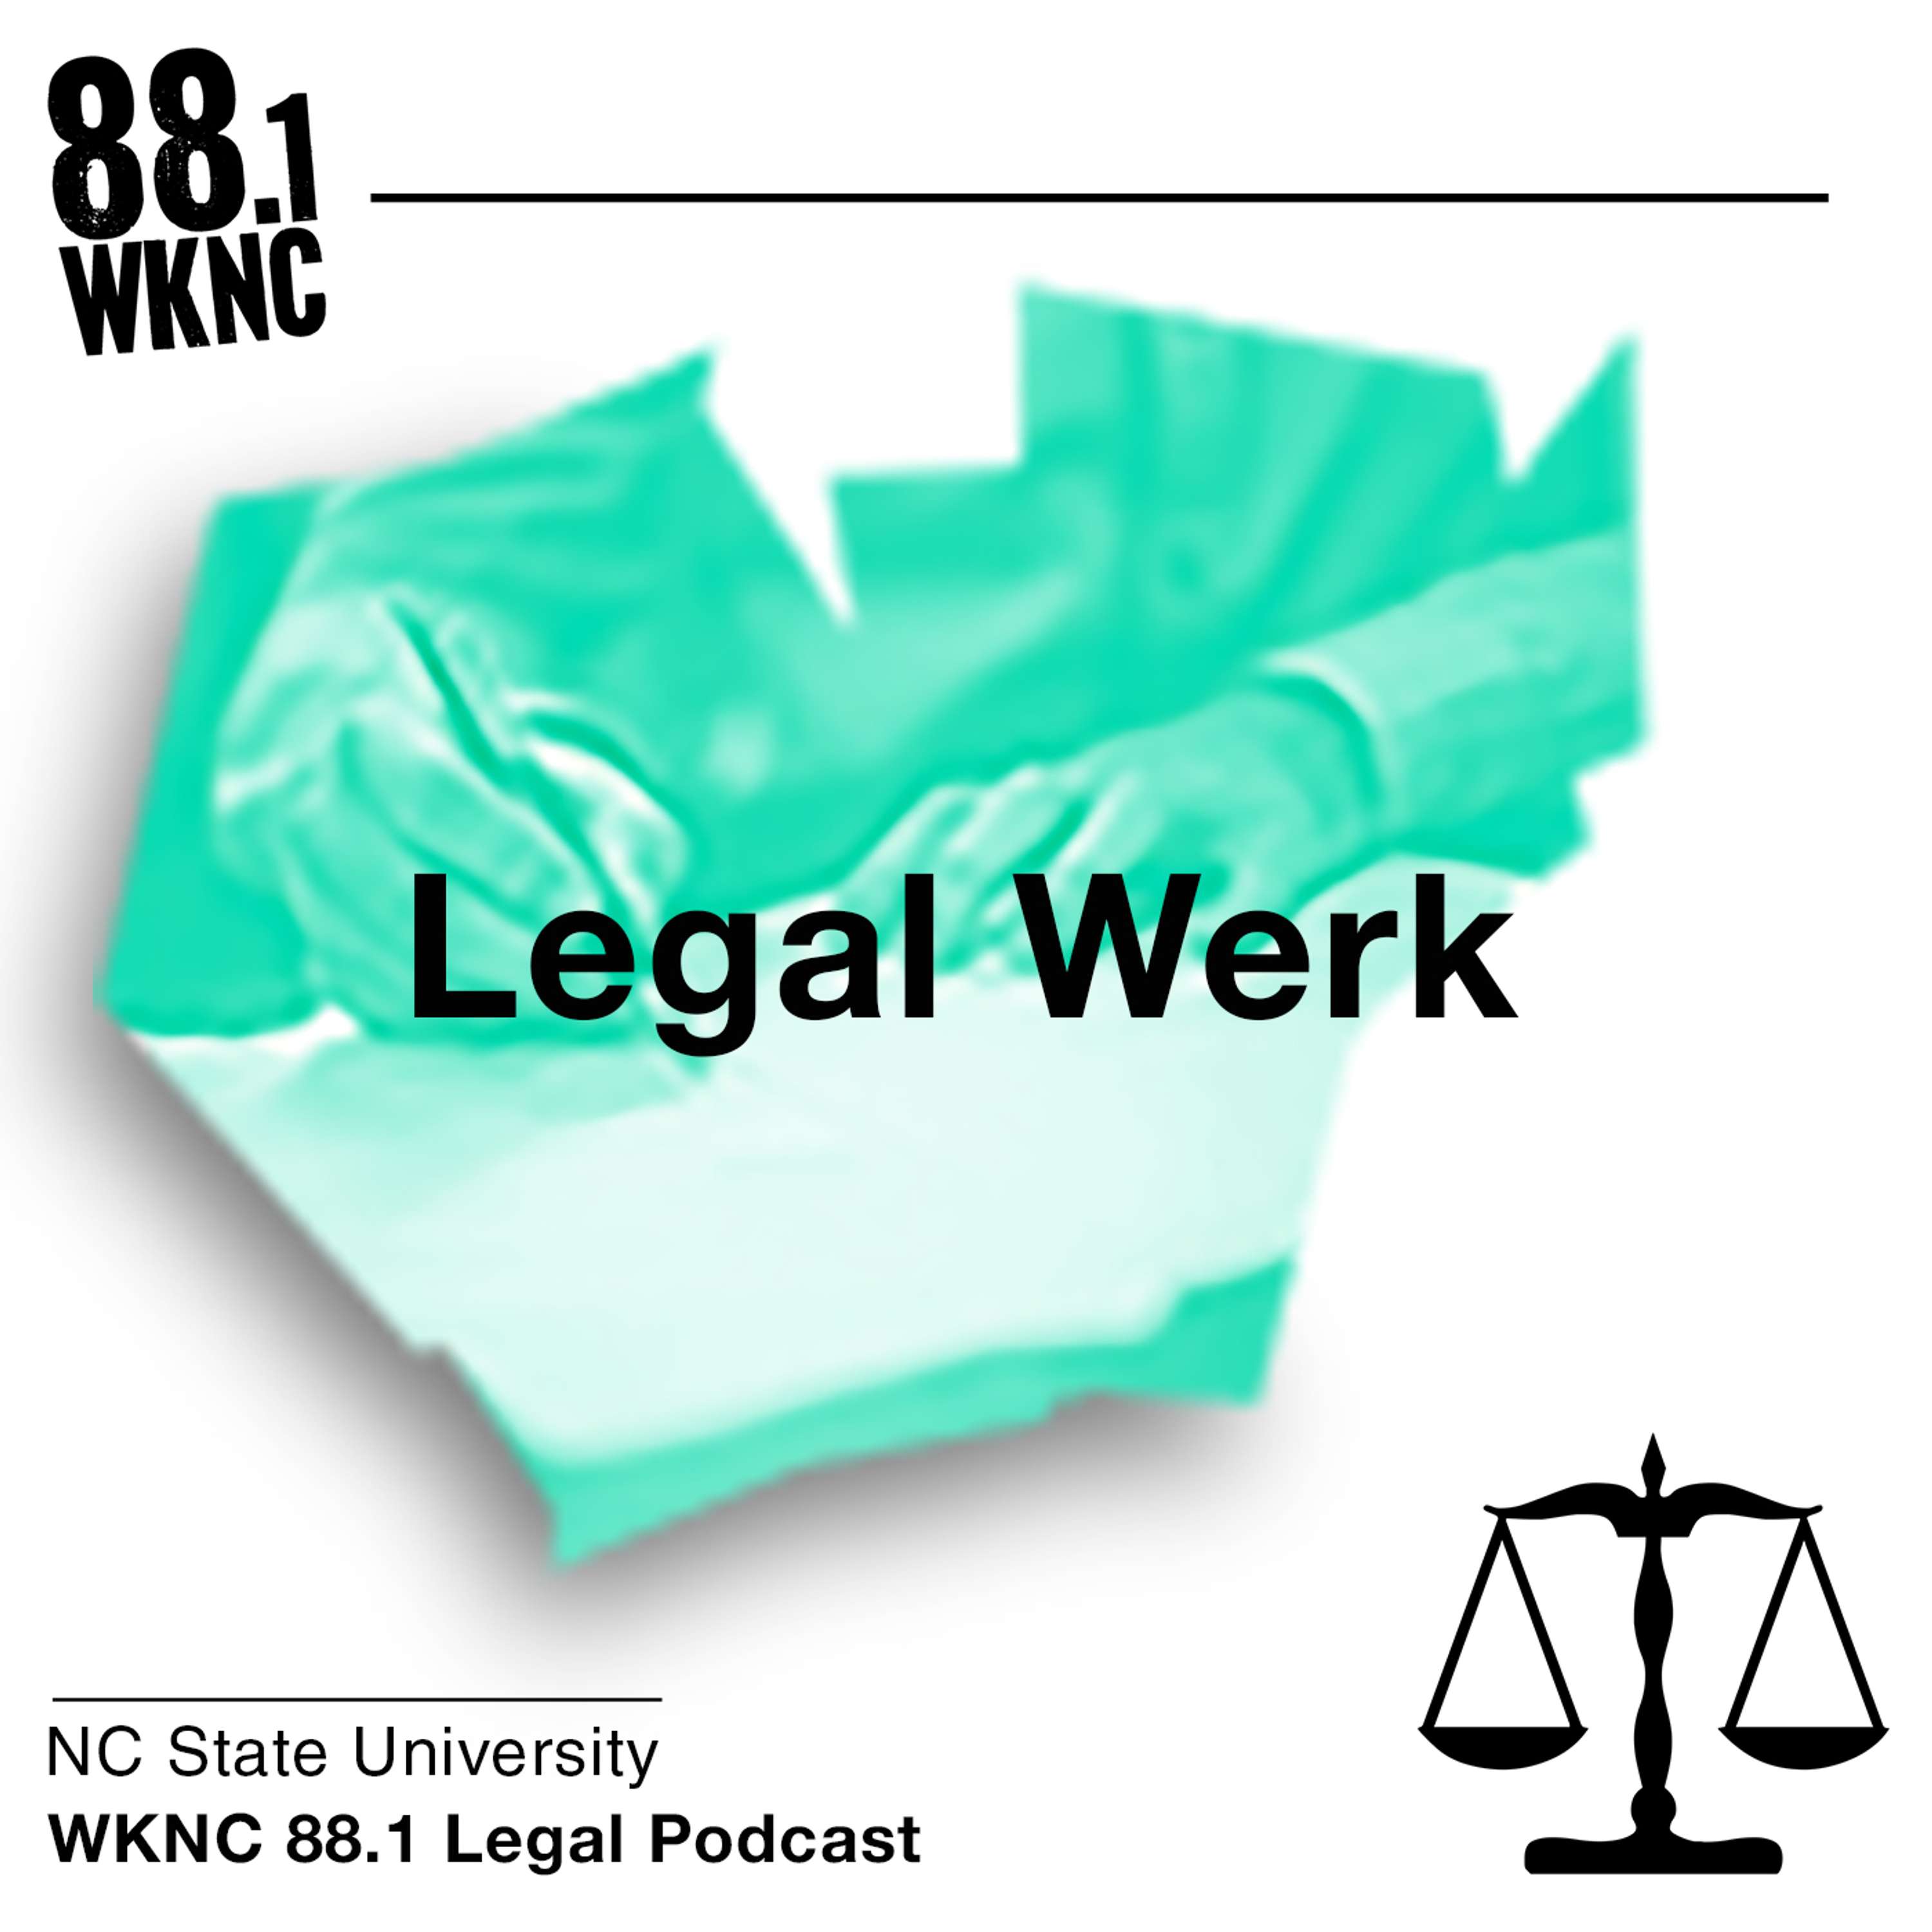 Legal Werk 3: Partying